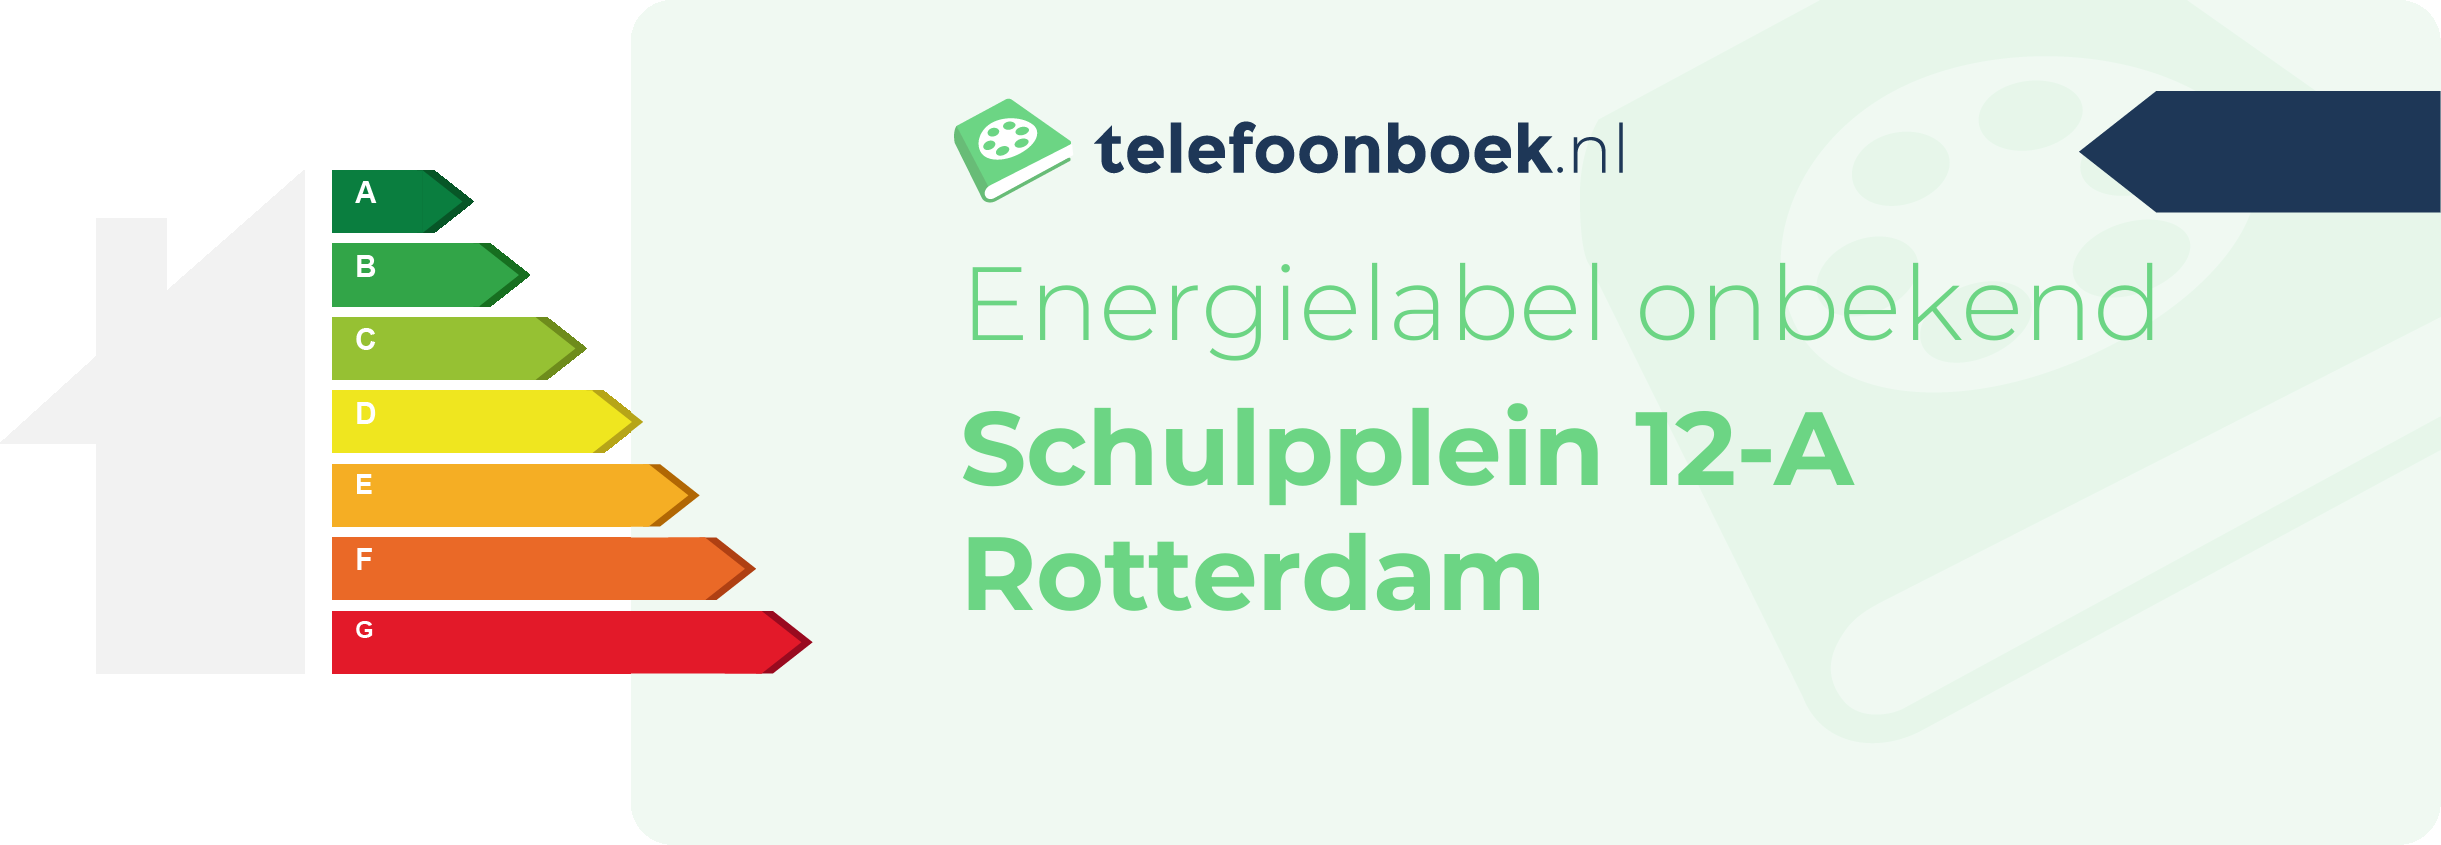 Energielabel Schulpplein 12-A Rotterdam